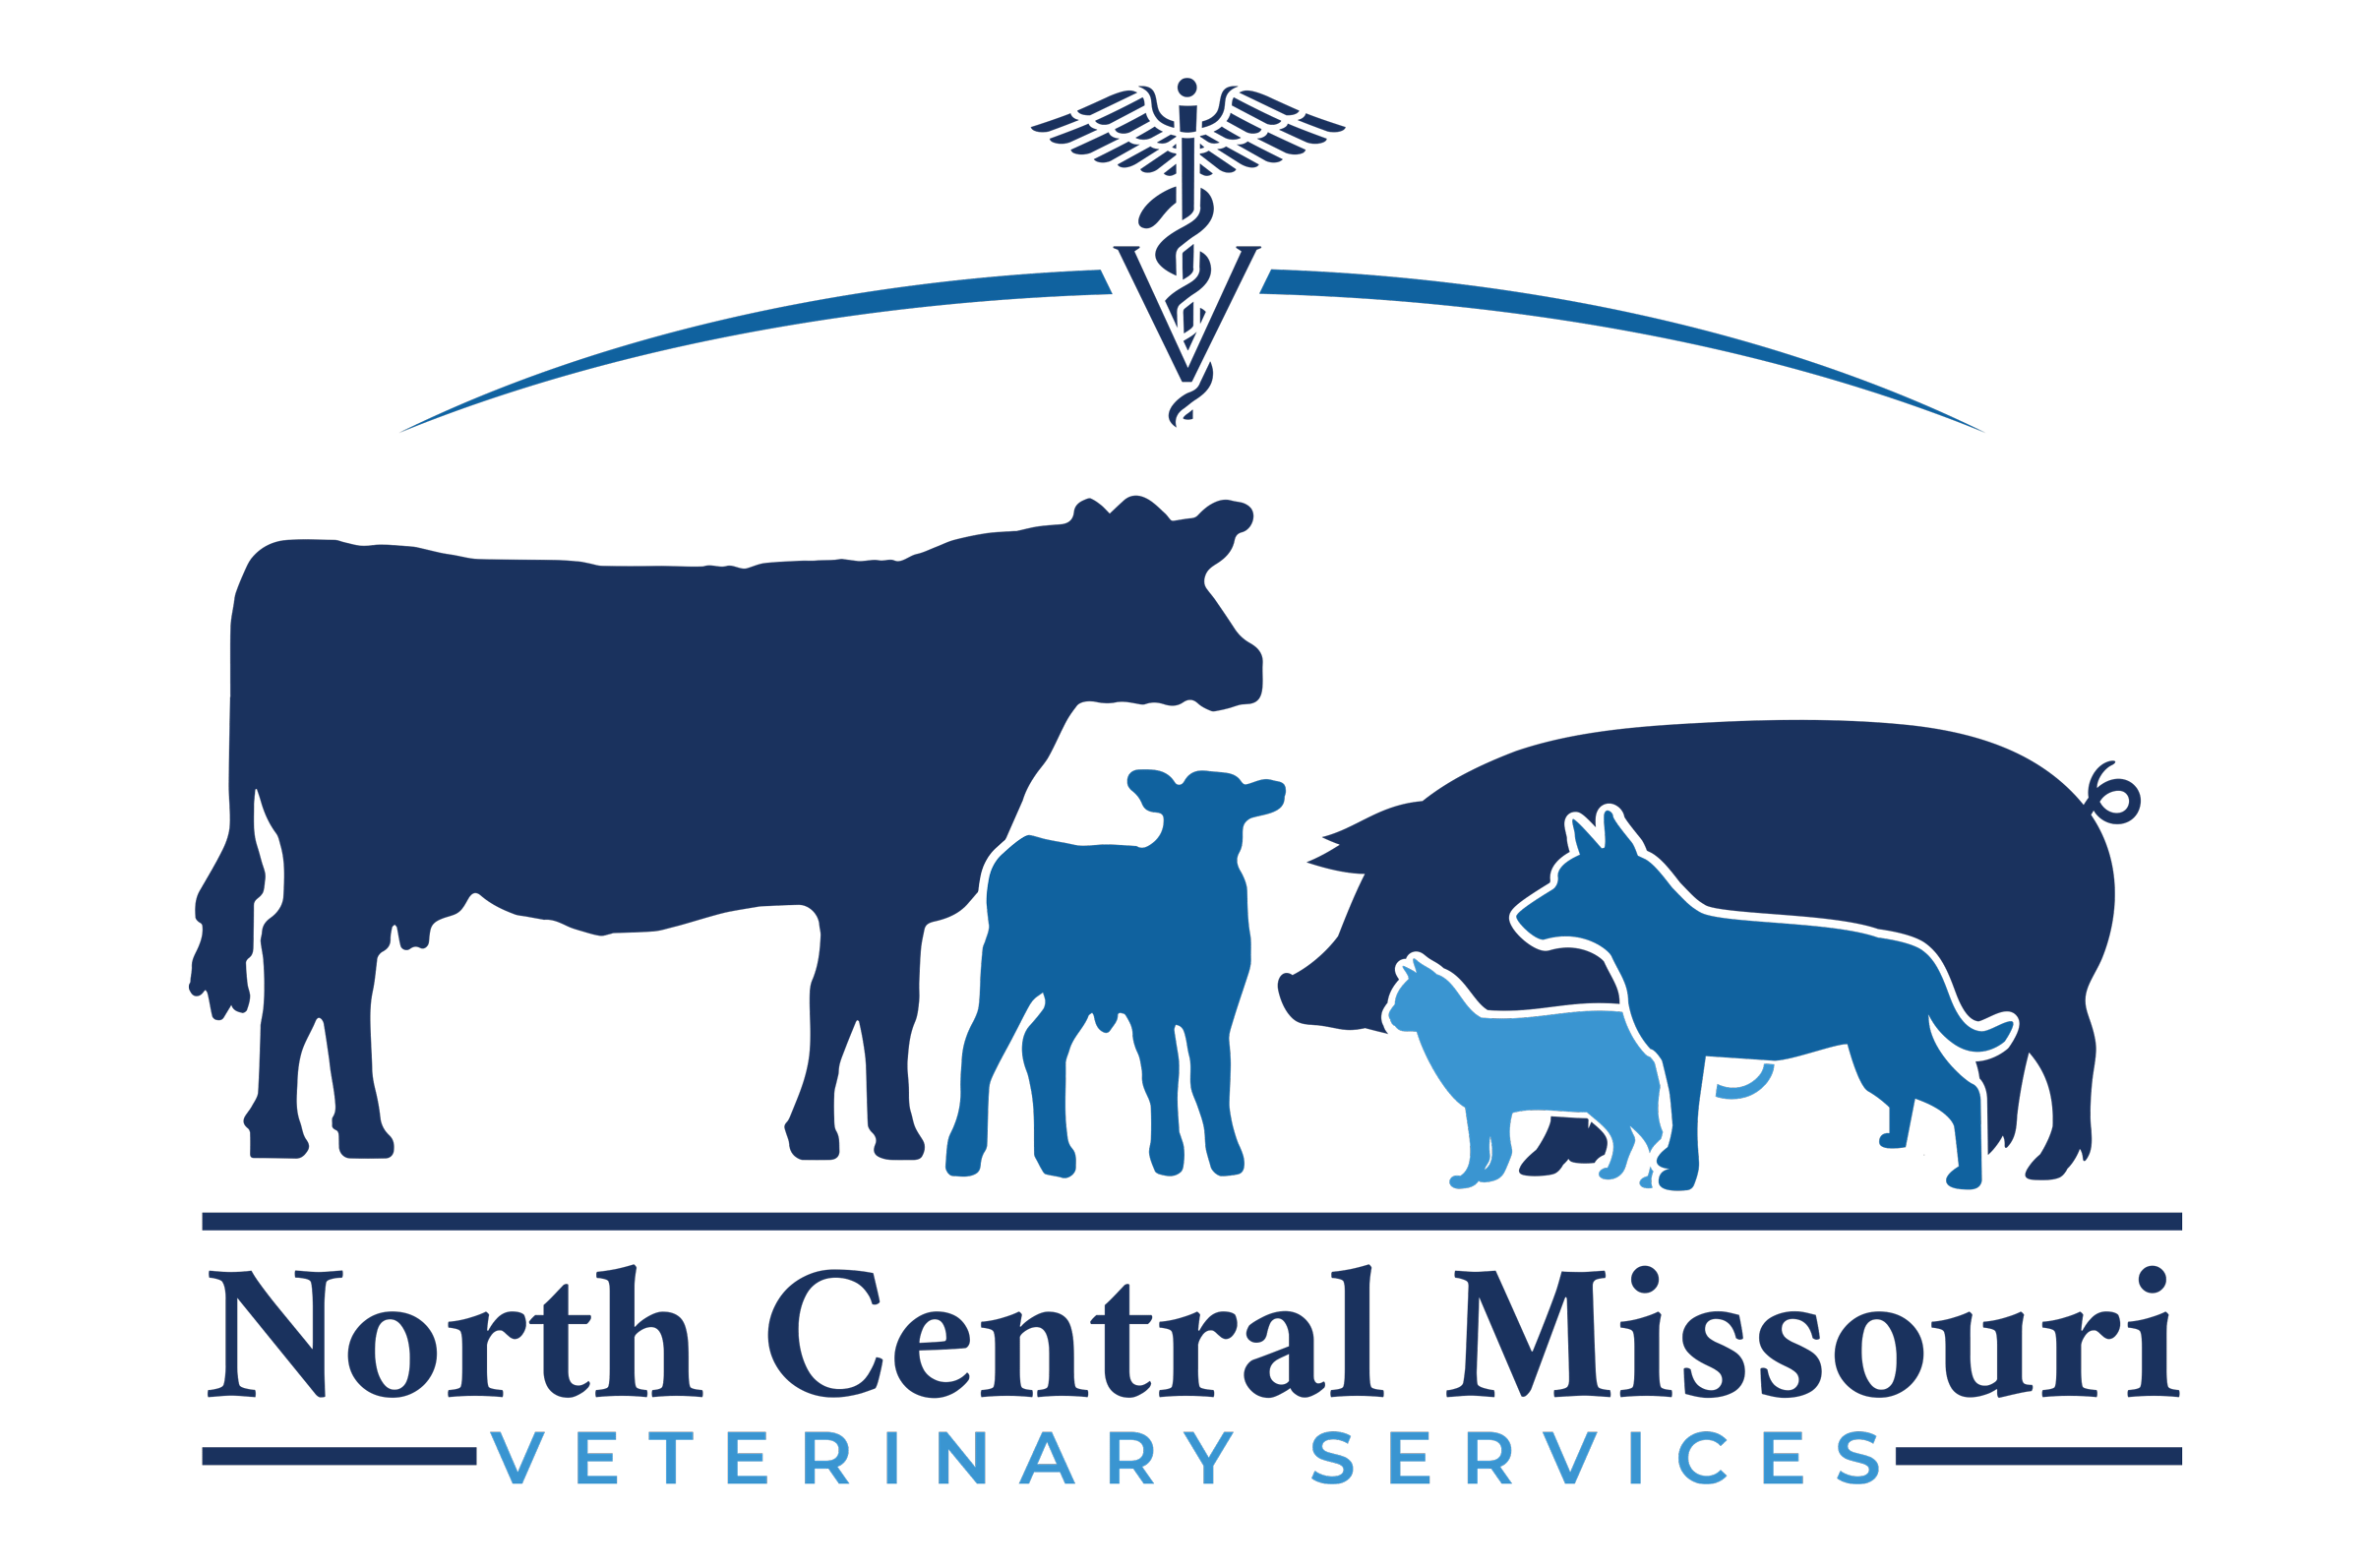 North Central Missouri Veterinary Services